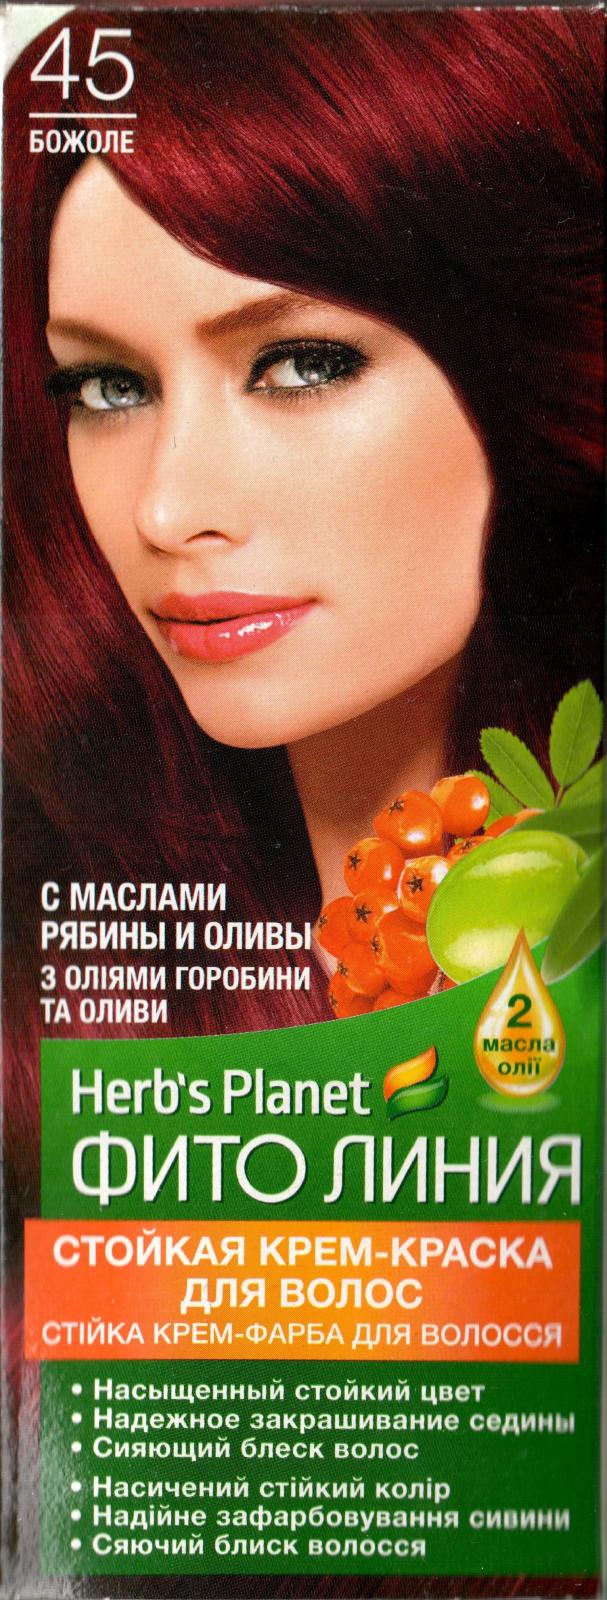 Стойкая крем-краска для волос "Фито линия Herb's Planet" тон 45 Божоле